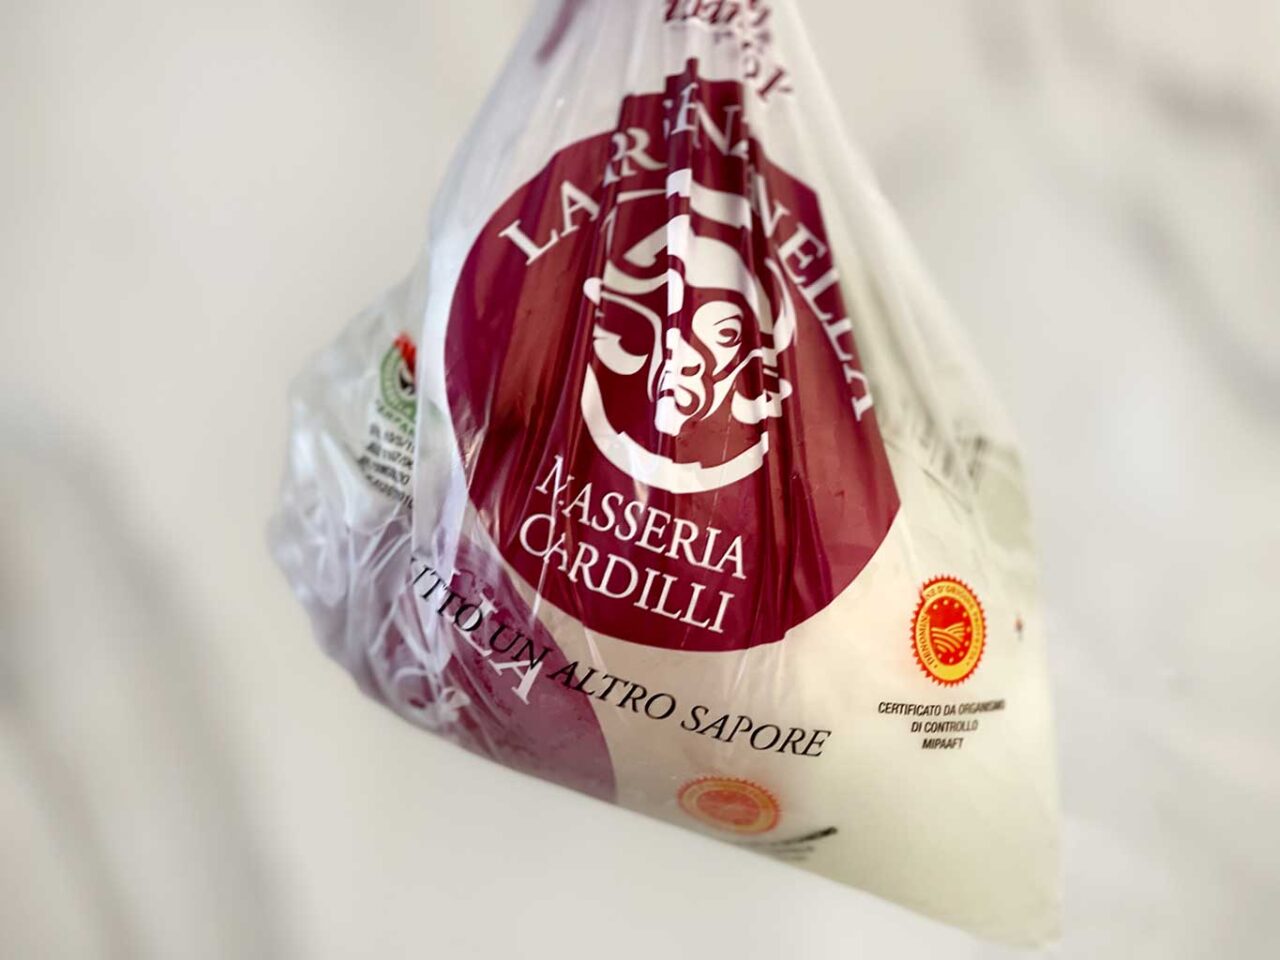 Masseria Cardilli vince agli ottavi del Campionato della Mozzarella di Bufala 2023